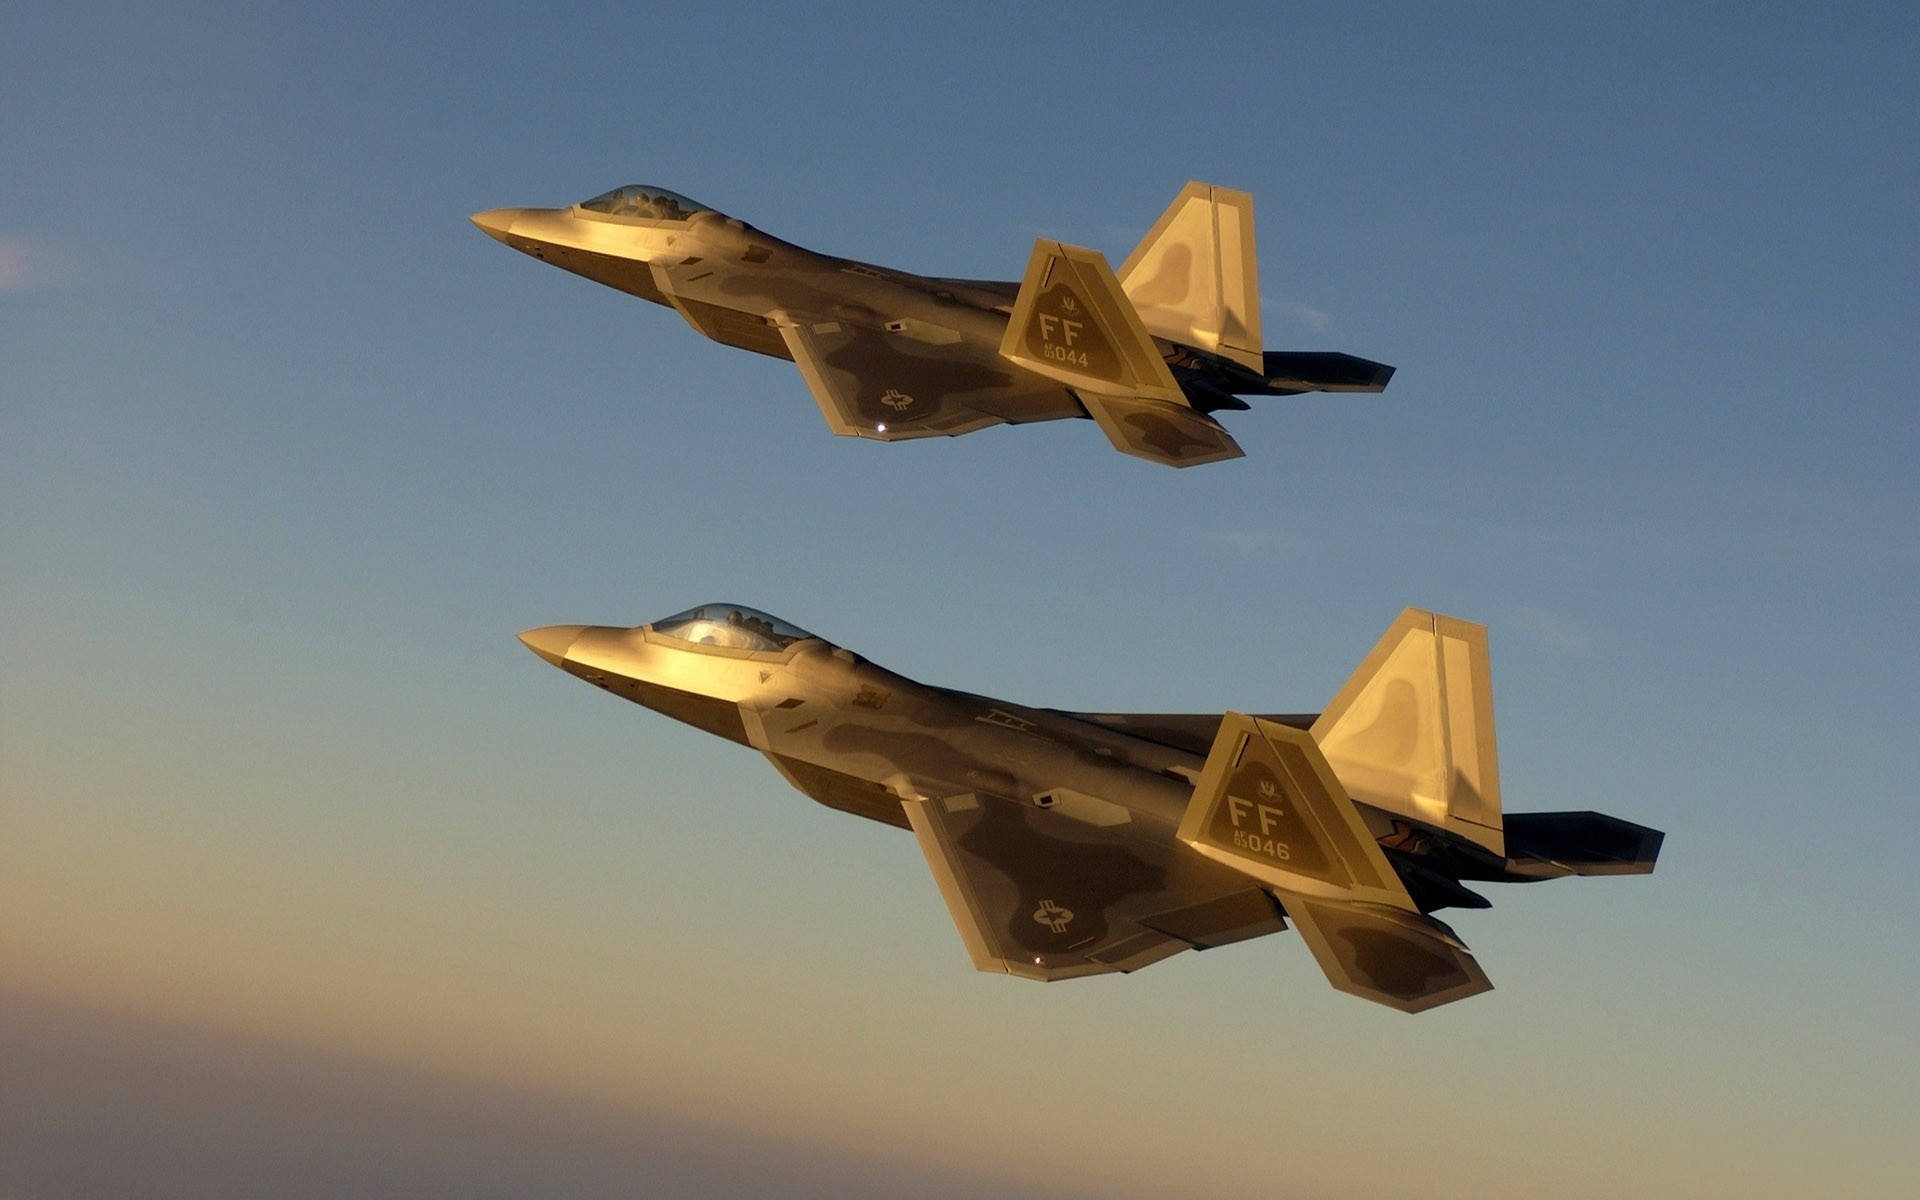 Et eskadrille af amerikanske militærjets flyver i formation over et ørkenlandskab. Wallpaper